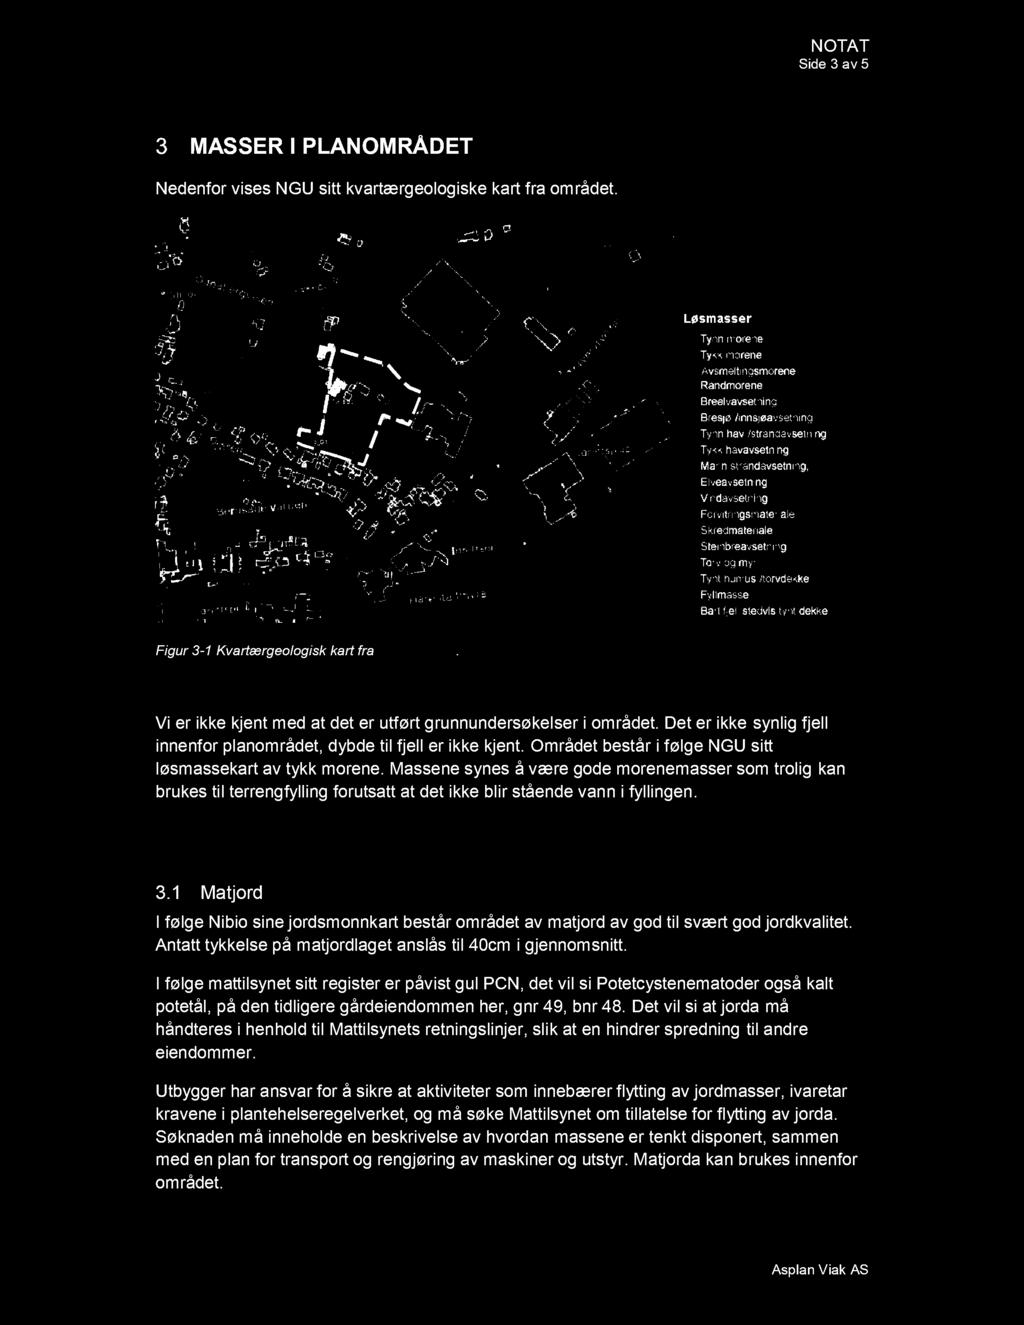 Side 3 av 5 MASSER I PLAN OMRÅ DET Nedenfor vises NGU sitt kvartærgeologiske kart fra området. Figur 3-1 Kvartærgeologisk kart fra www.ngu.no.